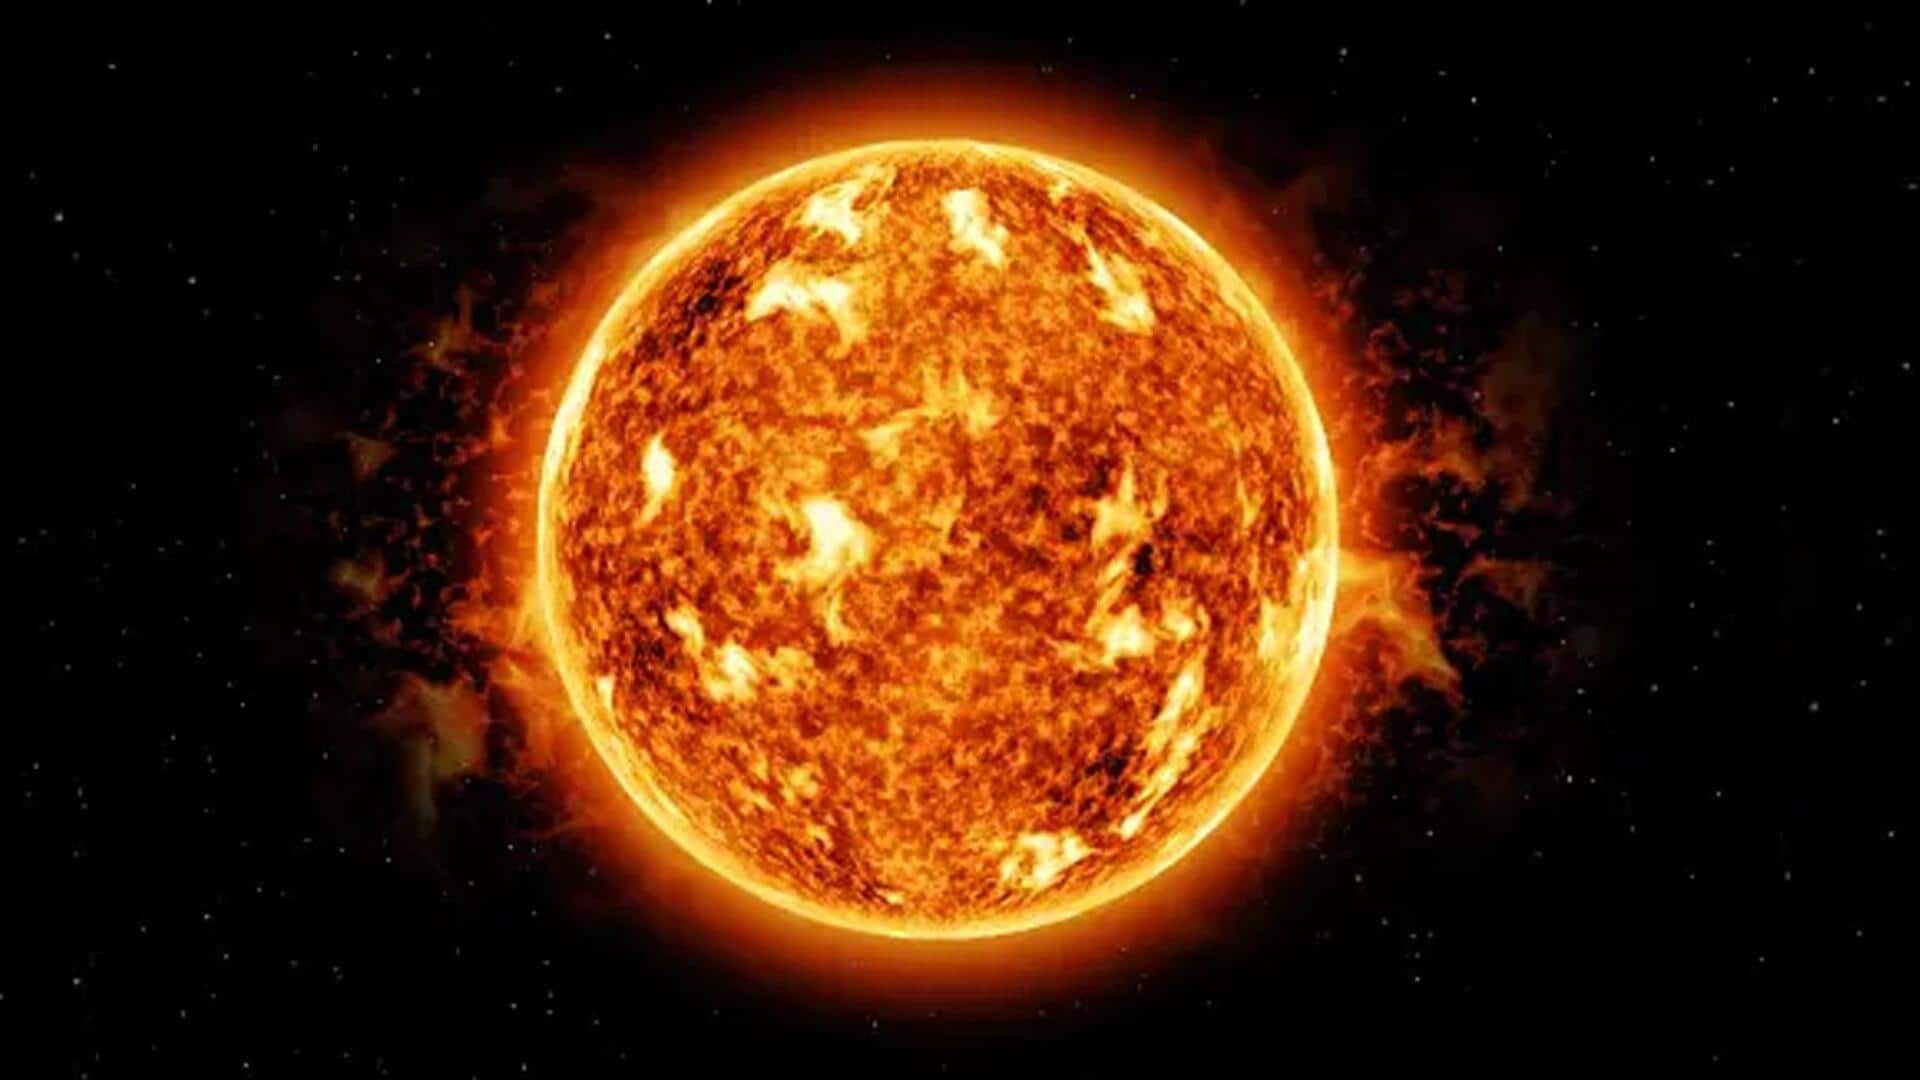 सनस्पॉट में विस्फोट से निकला सोलर फ्लेयर, पृथ्वी पर सौर तूफान आने की आशंका